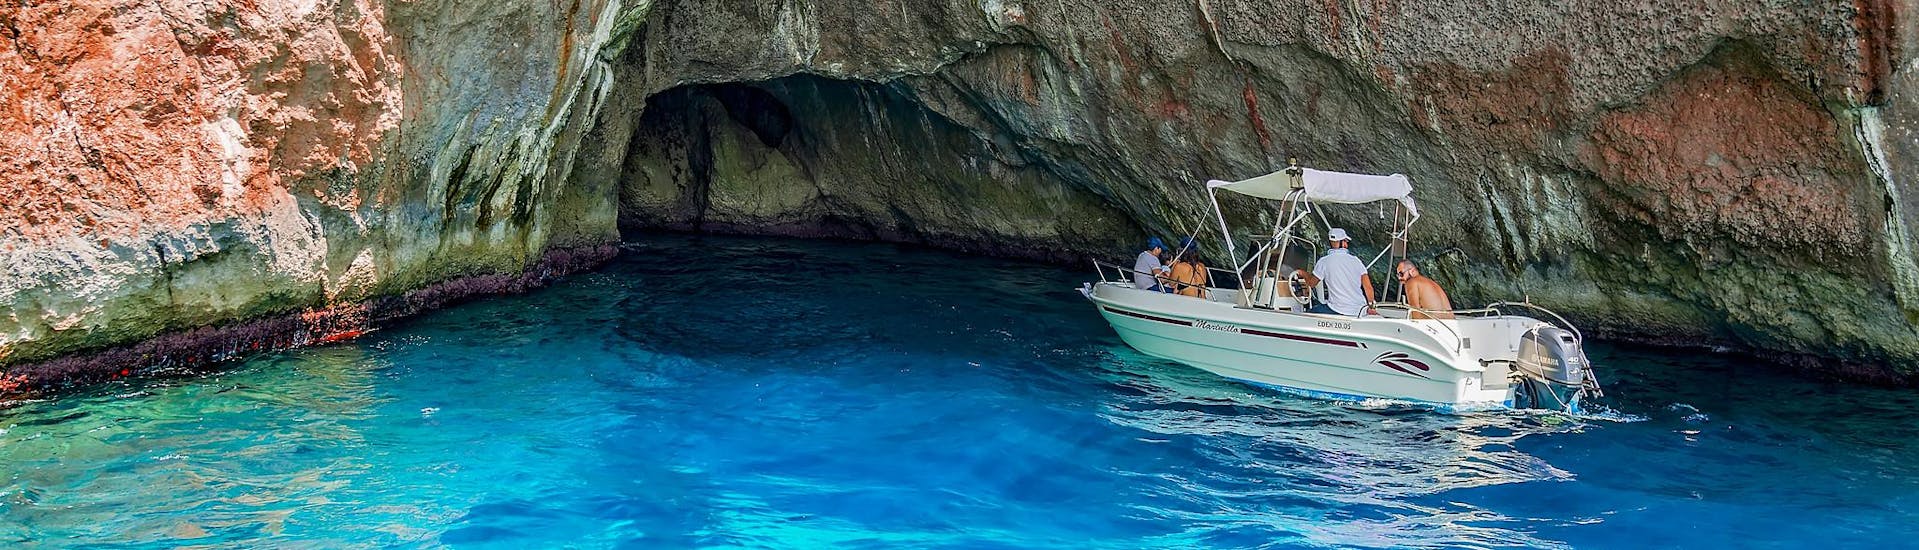 Un gruppo di persone si dirige verso una grotta marina durante un noleggio barche che non richiede la patente nautica